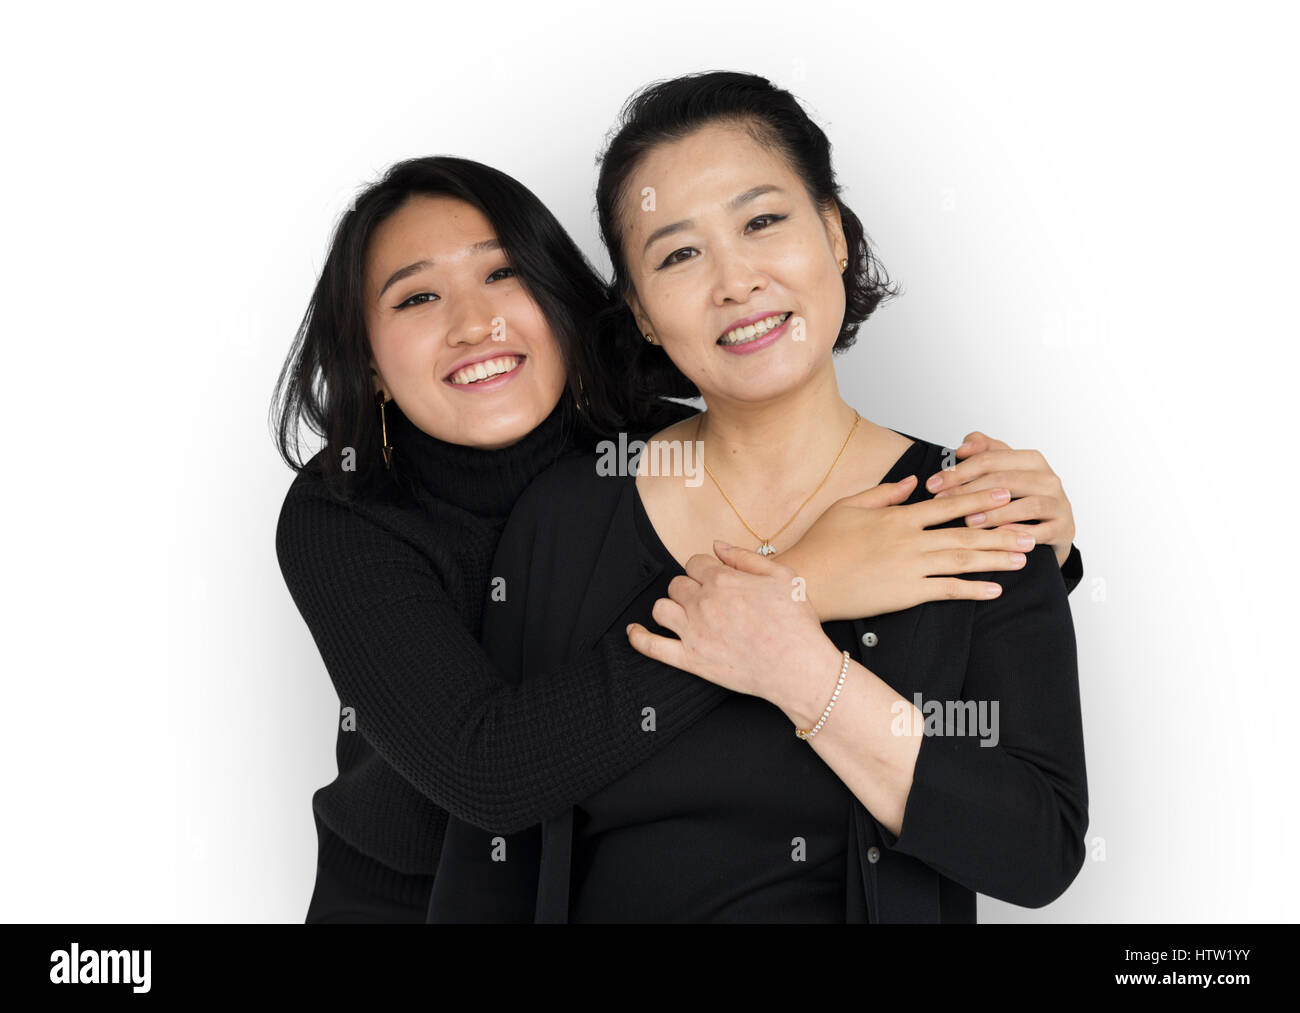 Японская мать и дочка. Фотосессия Дочки матери азиатских. Инстаграм азиатка дочь и мама. Азиат с дочкой. Азиатская мама.